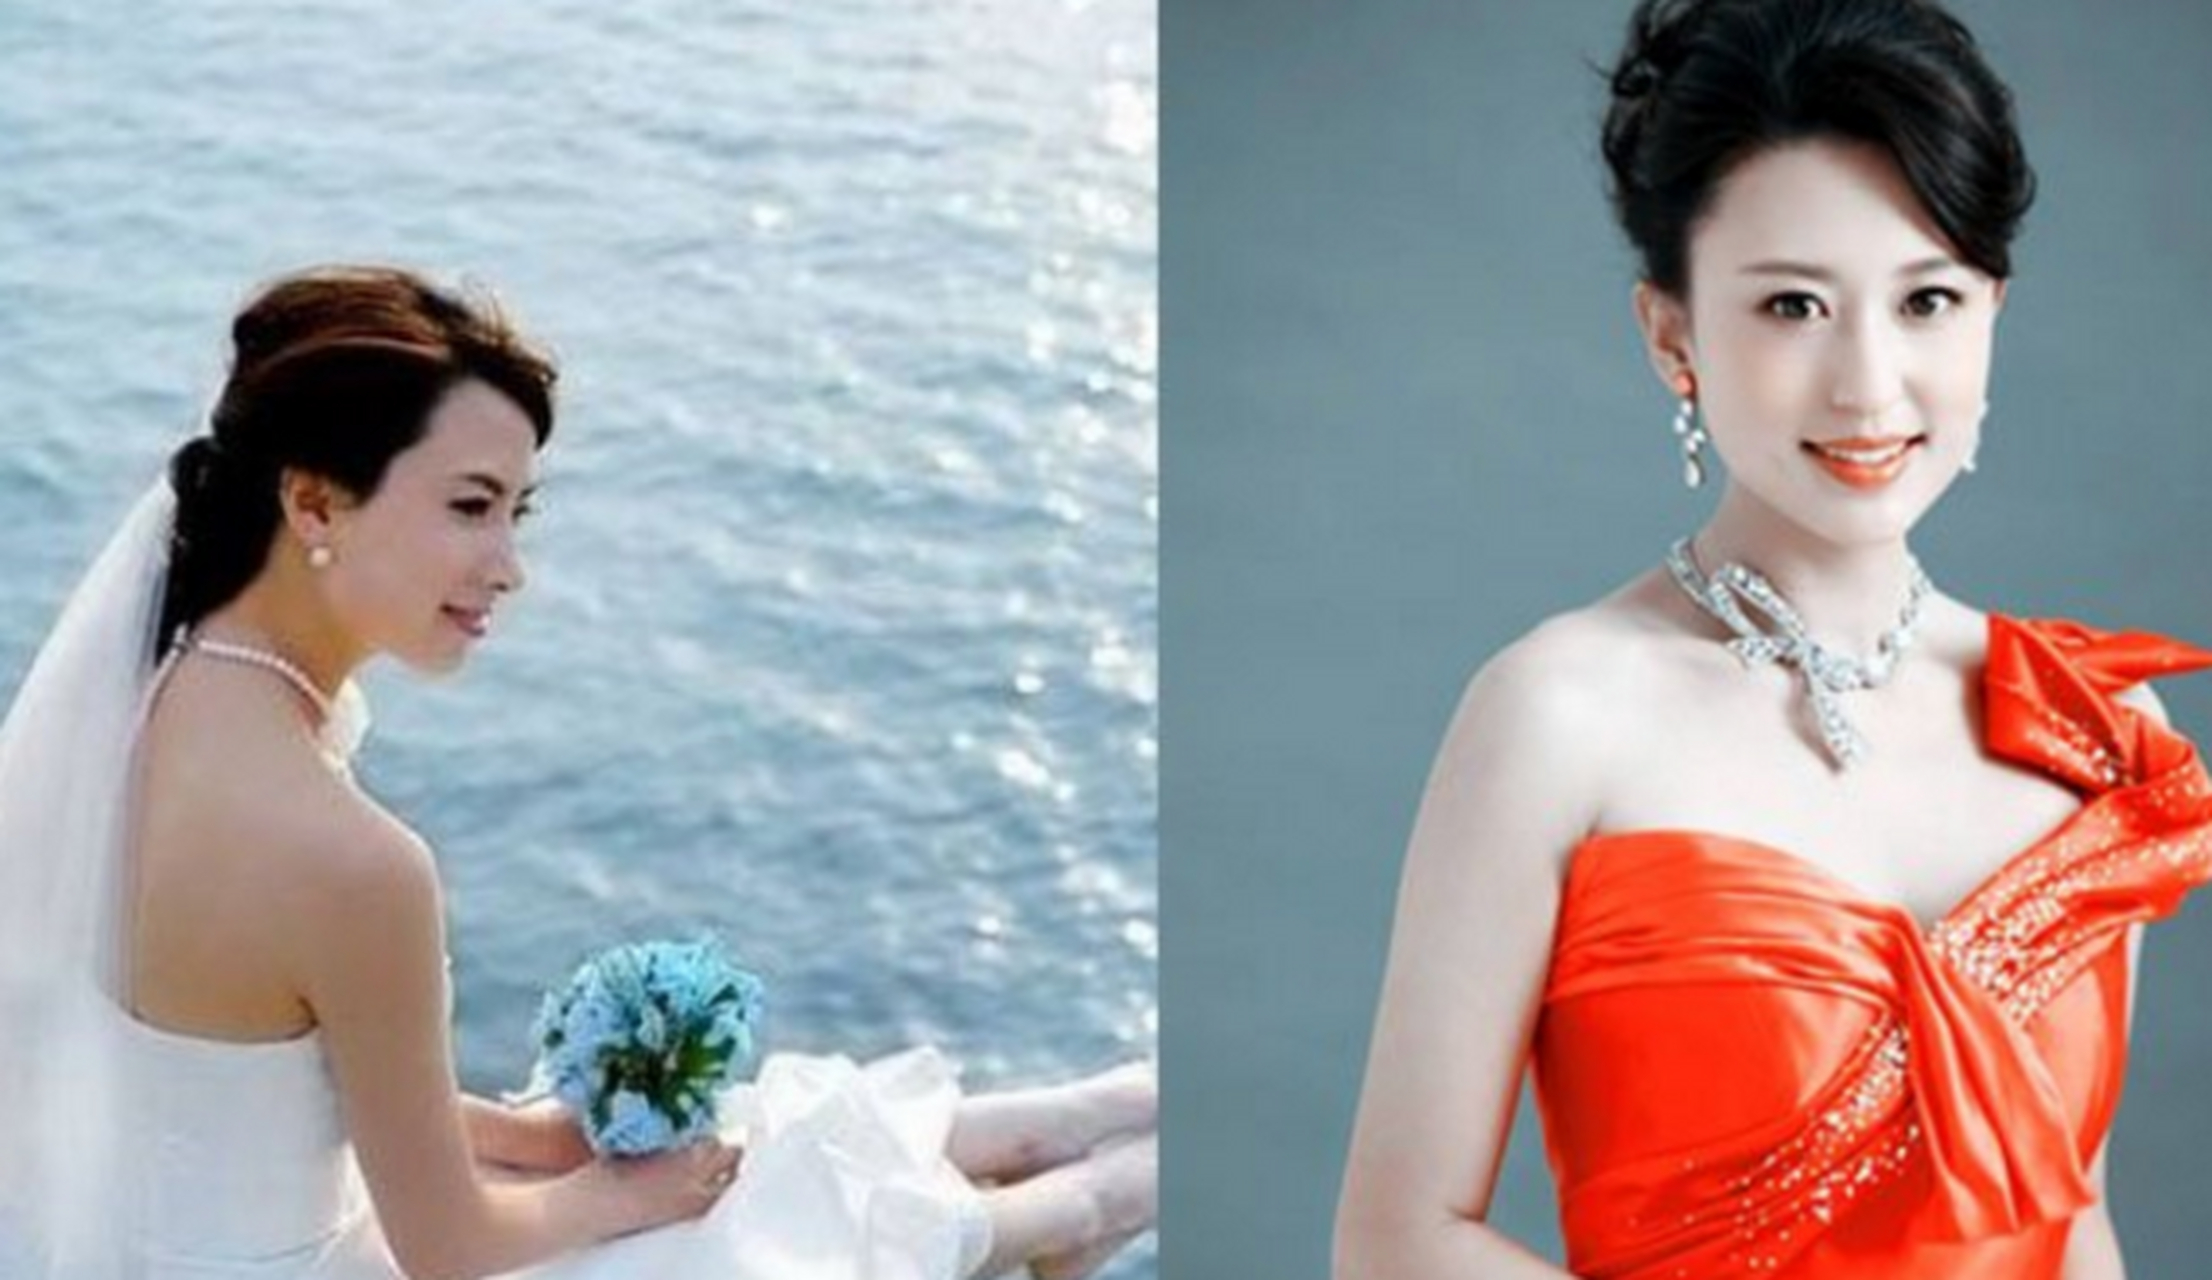 2013年,毕福剑把34岁的央视主持人张蕾,介绍给了54岁的富商王吉财,并